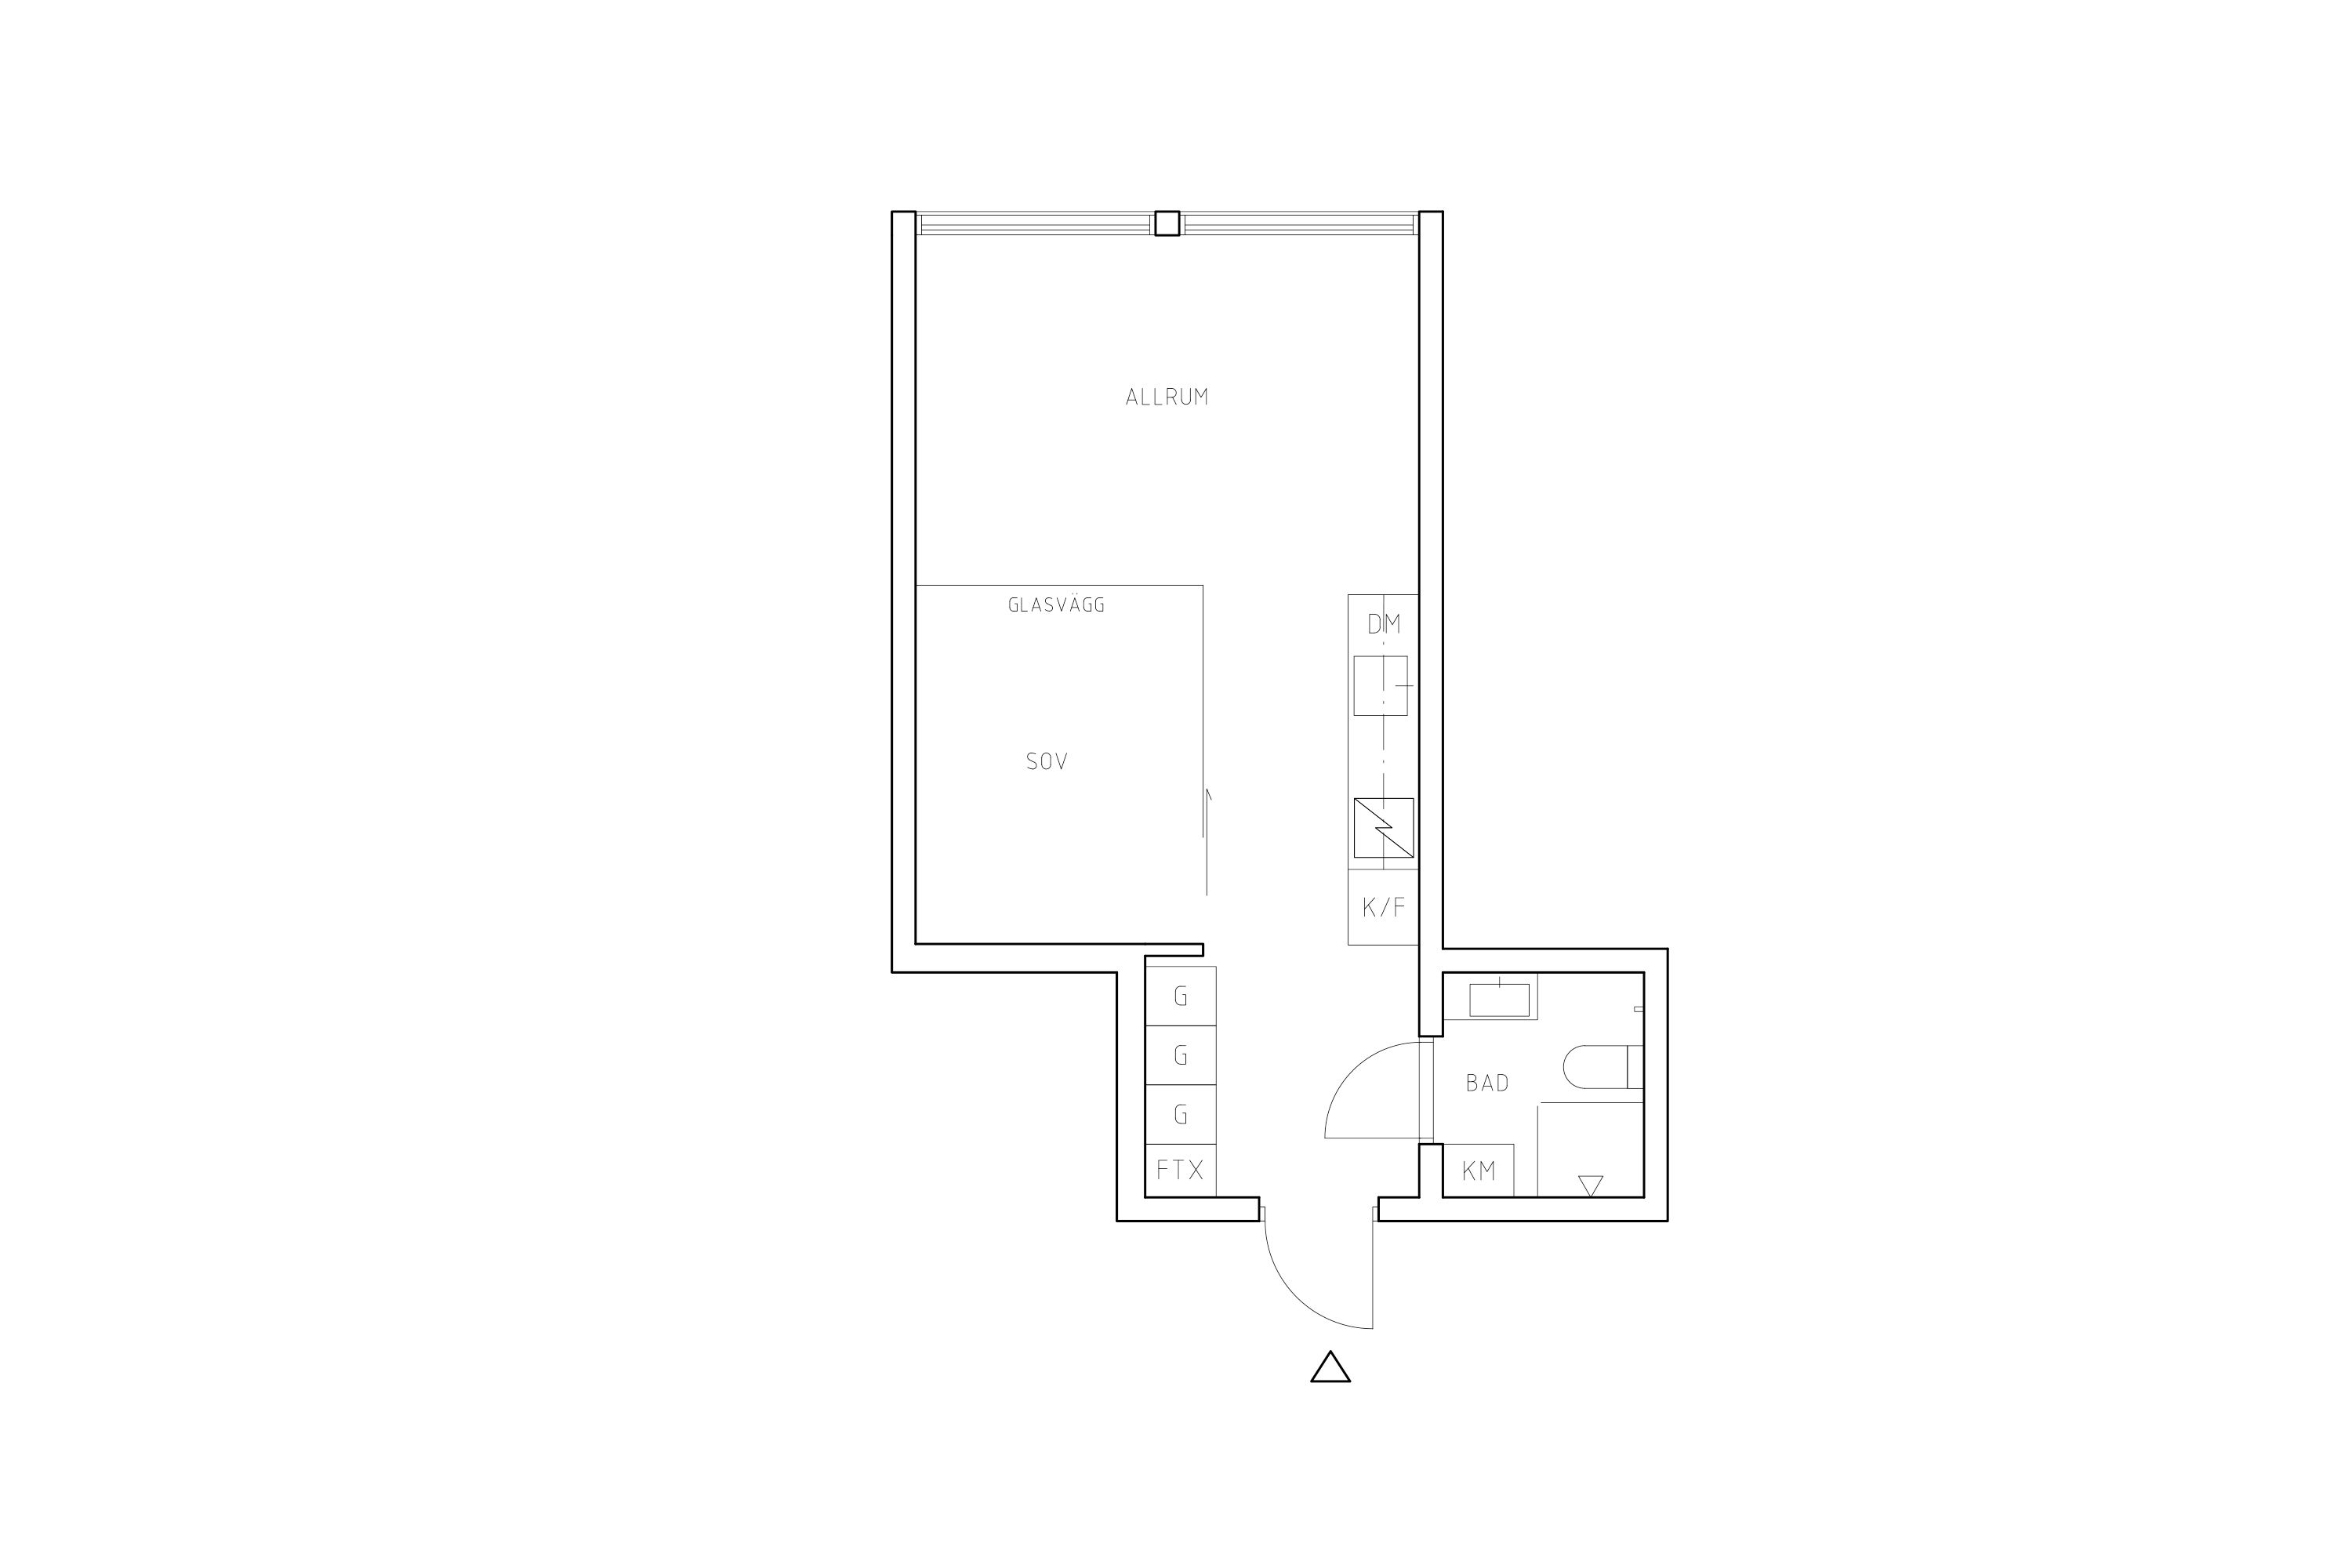 Planritning lägenhet 4003